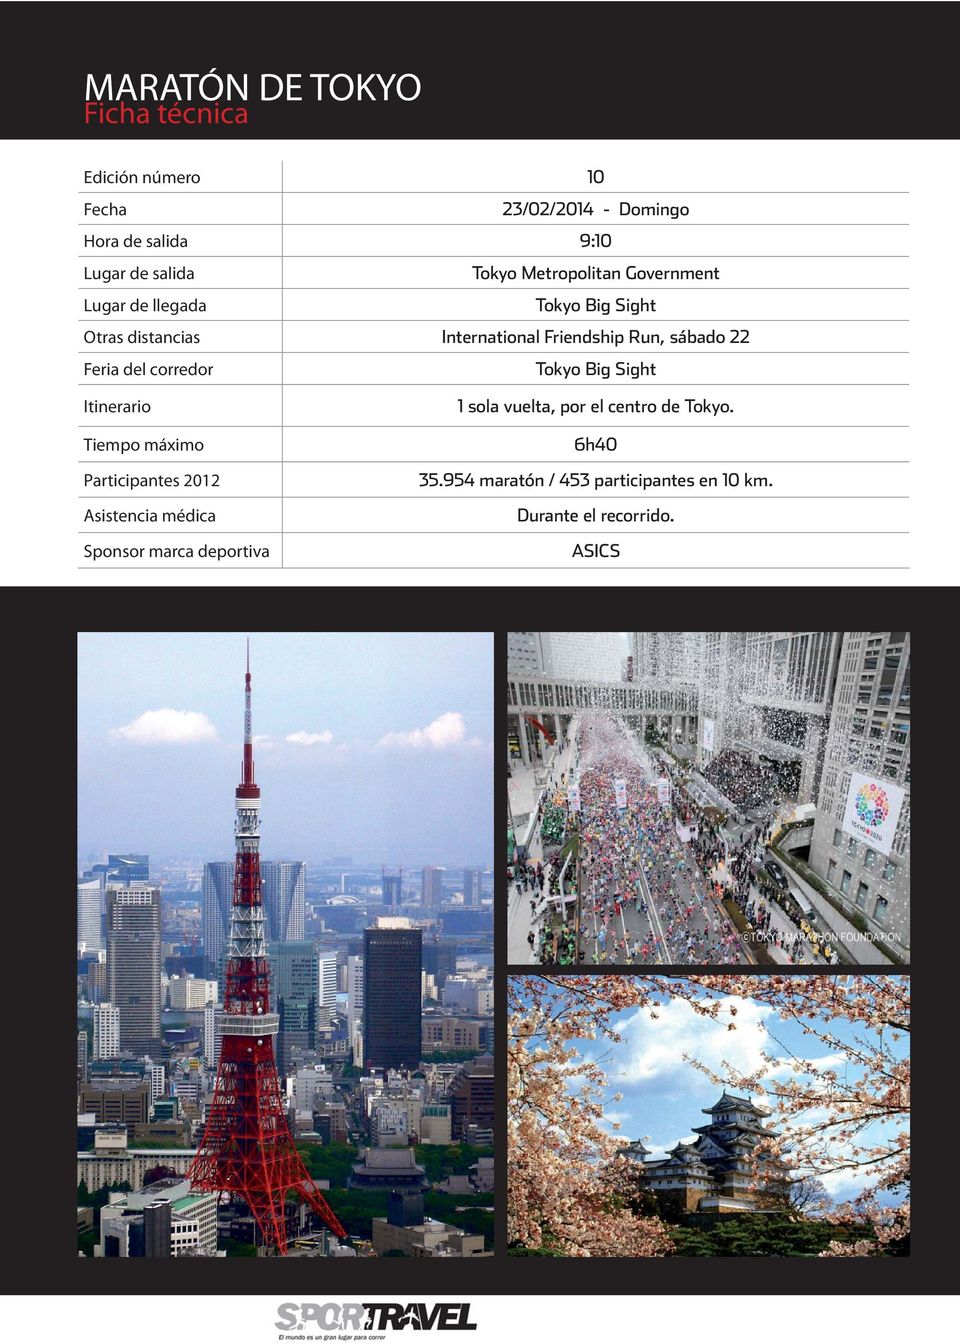 Feria del corredor Tokyo Big Sight Itinerario Tiempo máximo Participantes 2012 Asistencia médica Sponsor marca